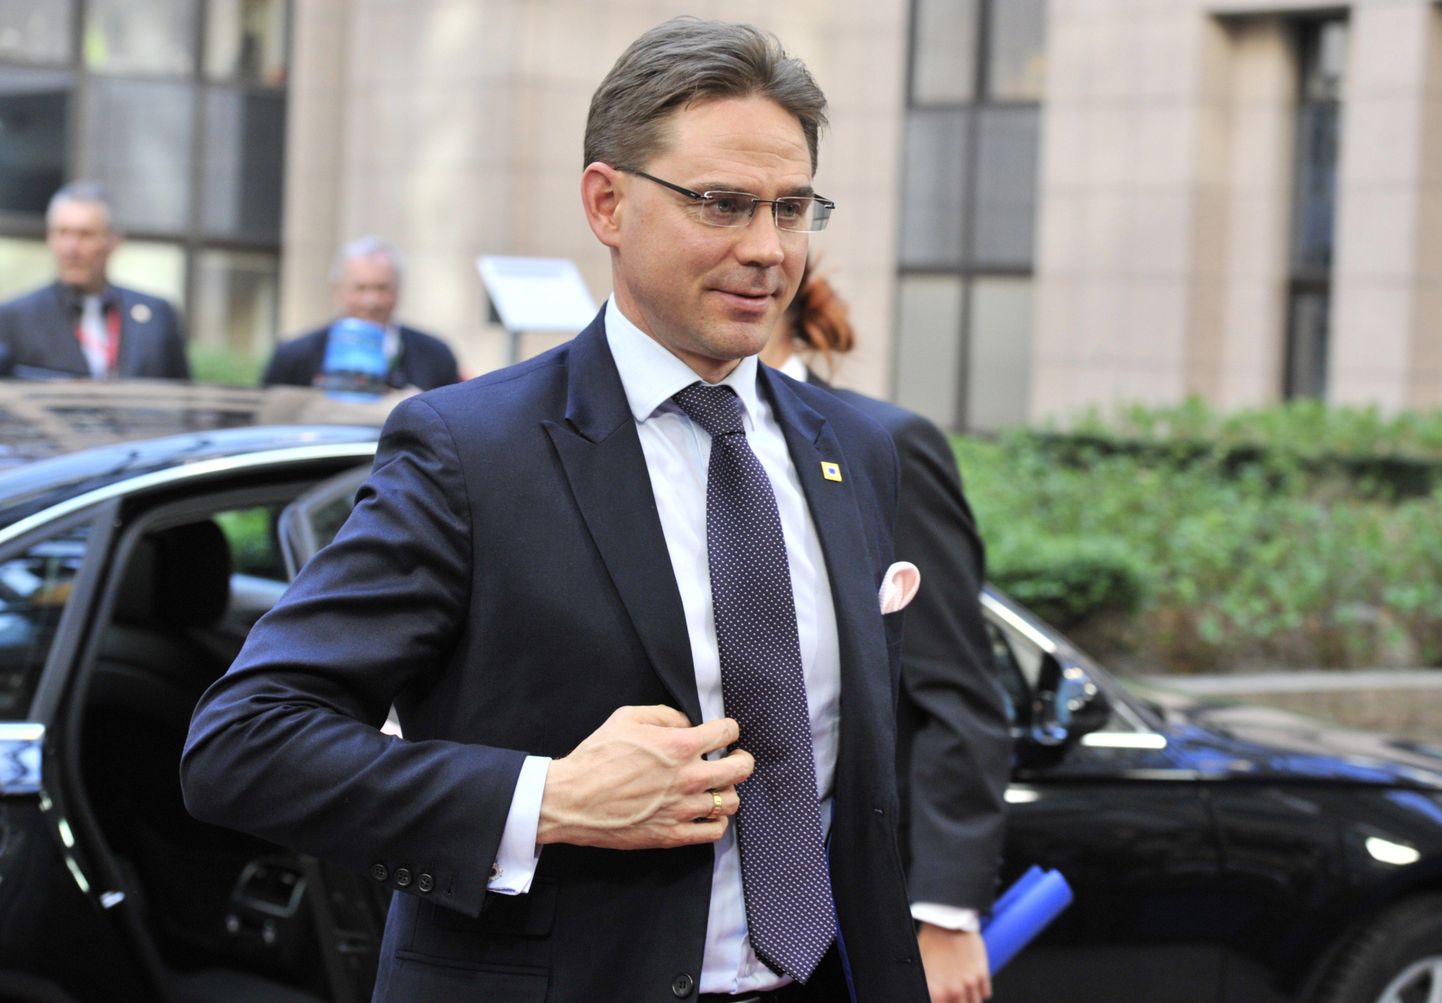 Soome peaminister Jyrki Katainen peab lähipäevil leidma valitsusse kaks uut ministrit, kuna Vasakliidu liikmed lahkusid valitsusest.